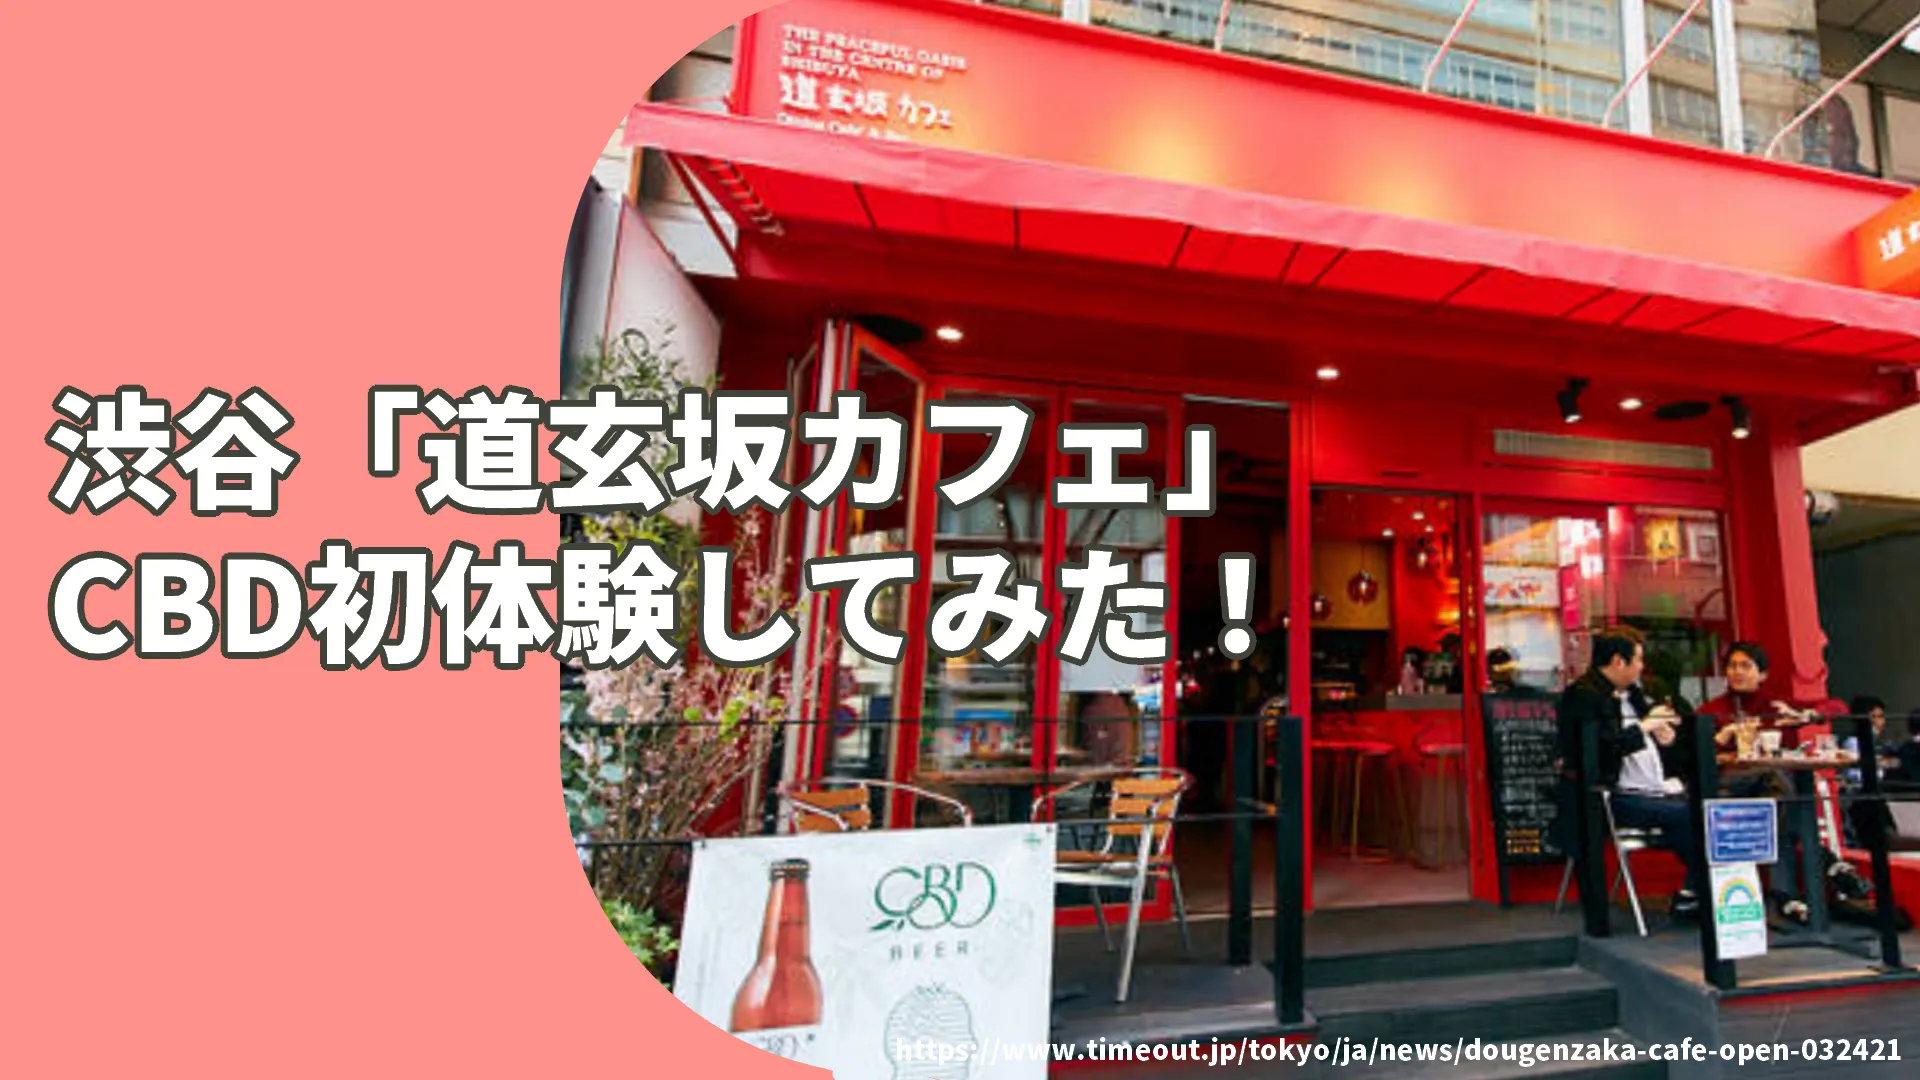 渋谷のCBDカフェ「道玄坂カフェ」の外観